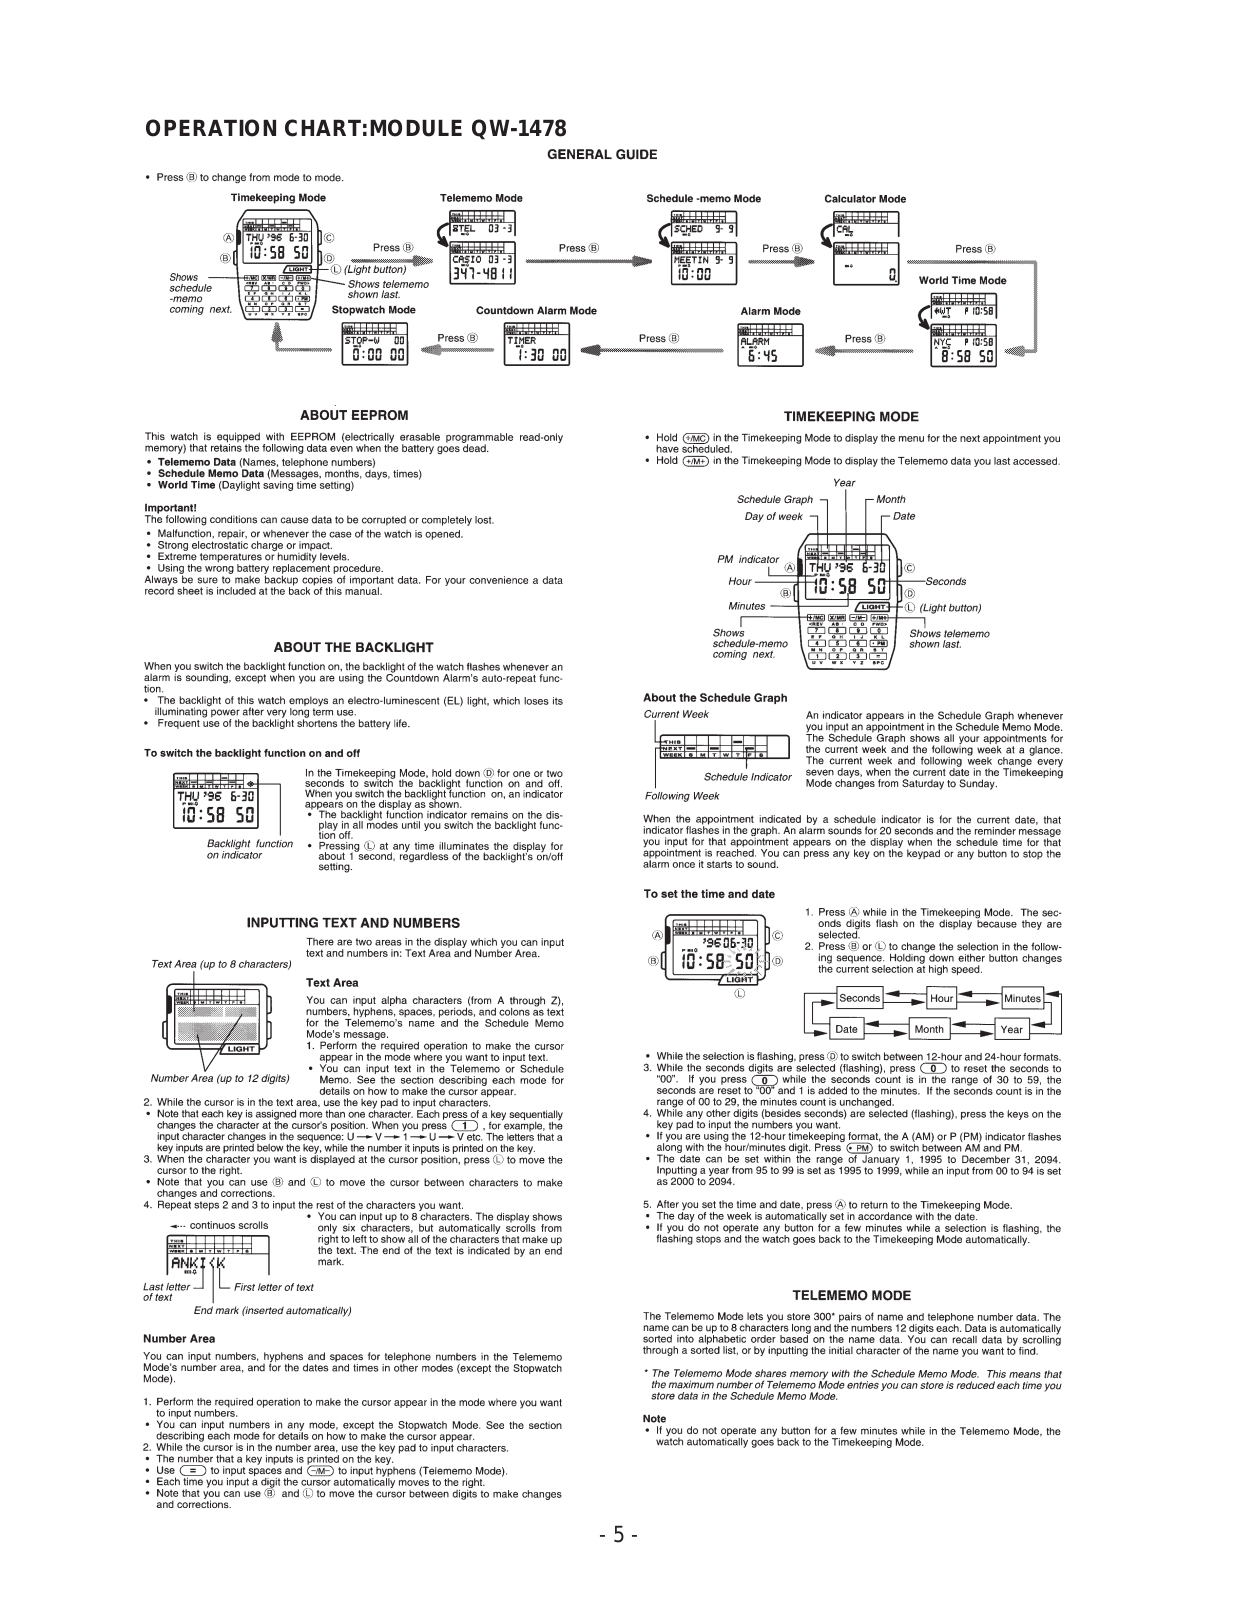 Casio 1478 Owner's Manual